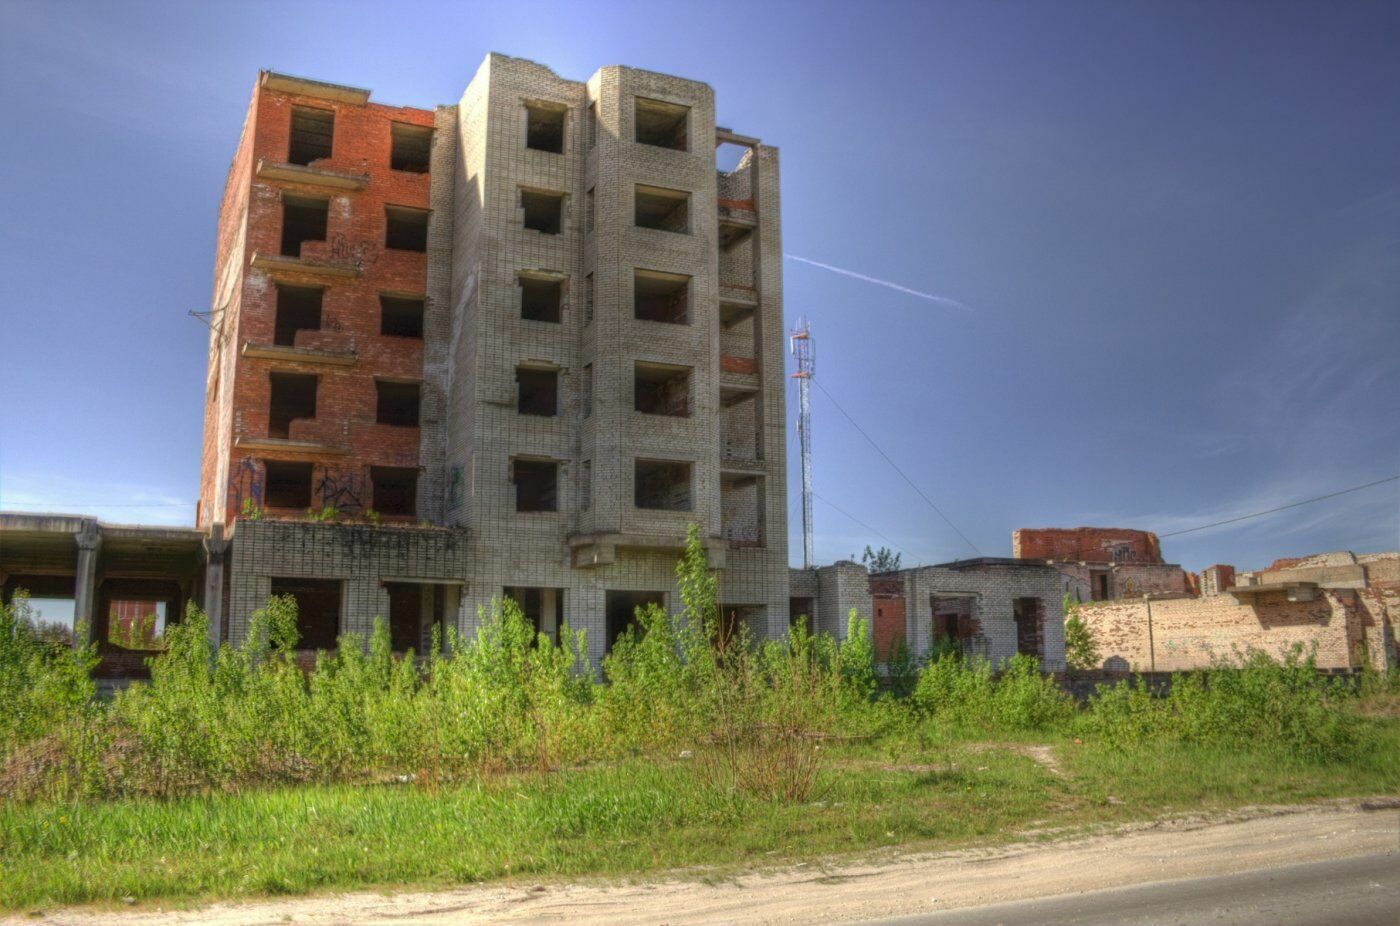 Симптом кризиса: в России резко упали объемы строительства